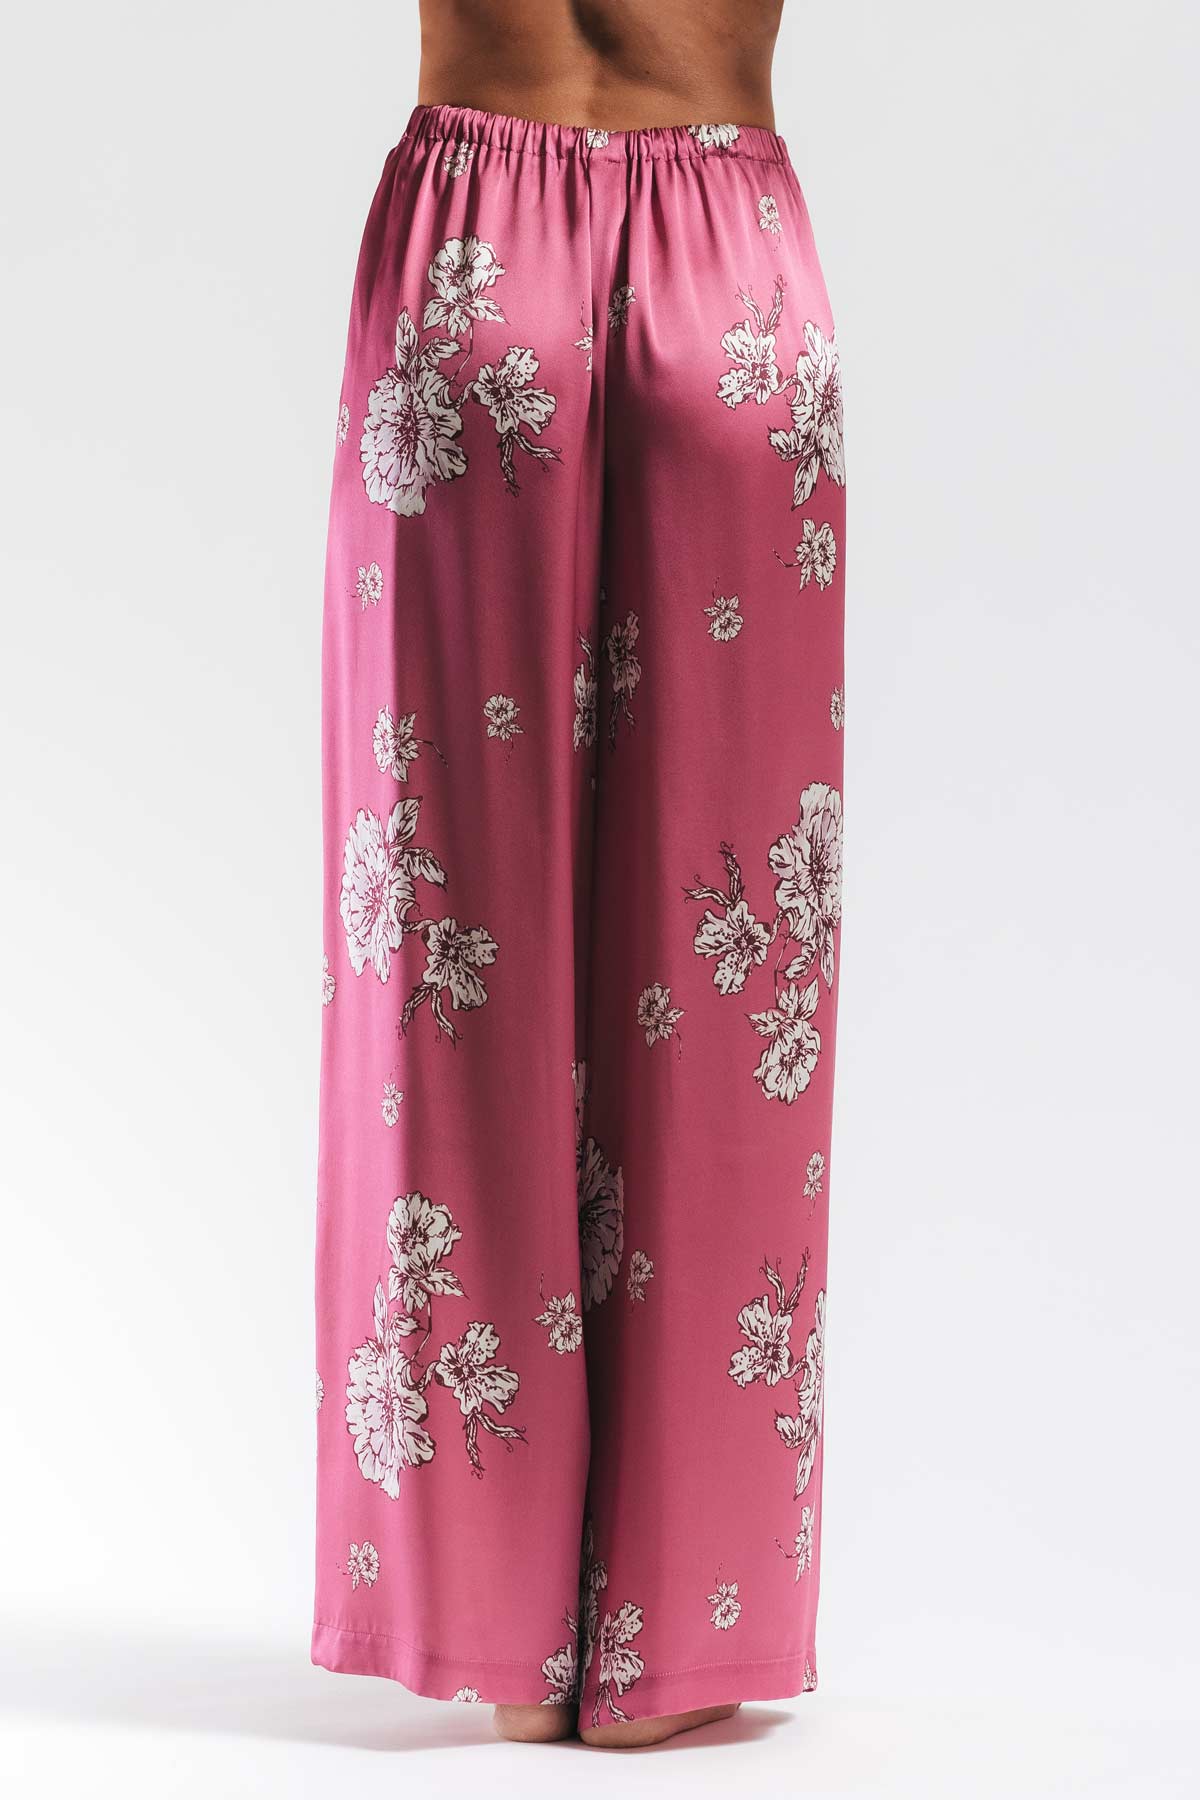 Peony Blooms Leisure PJ Silk Wrap Set Pajama NK iMODE 